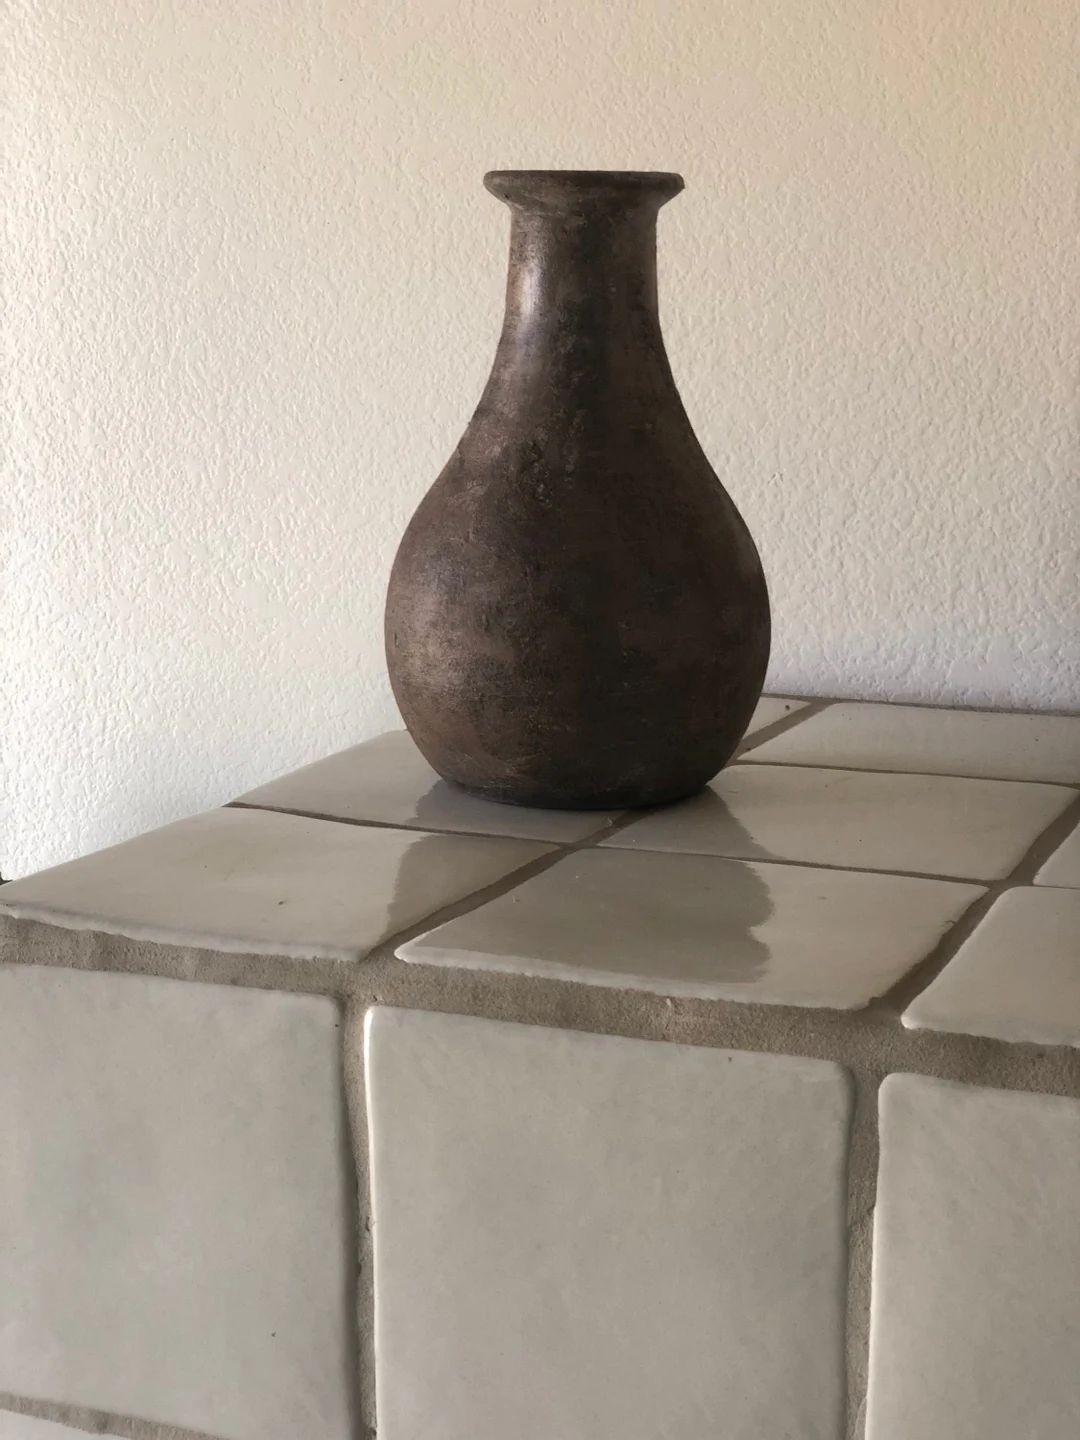 Aged Vase Old Vessel Antiqued Pot Rustic Decor Boho House Warming Gift Old Olive Jar Natural Ston... | Etsy (US)